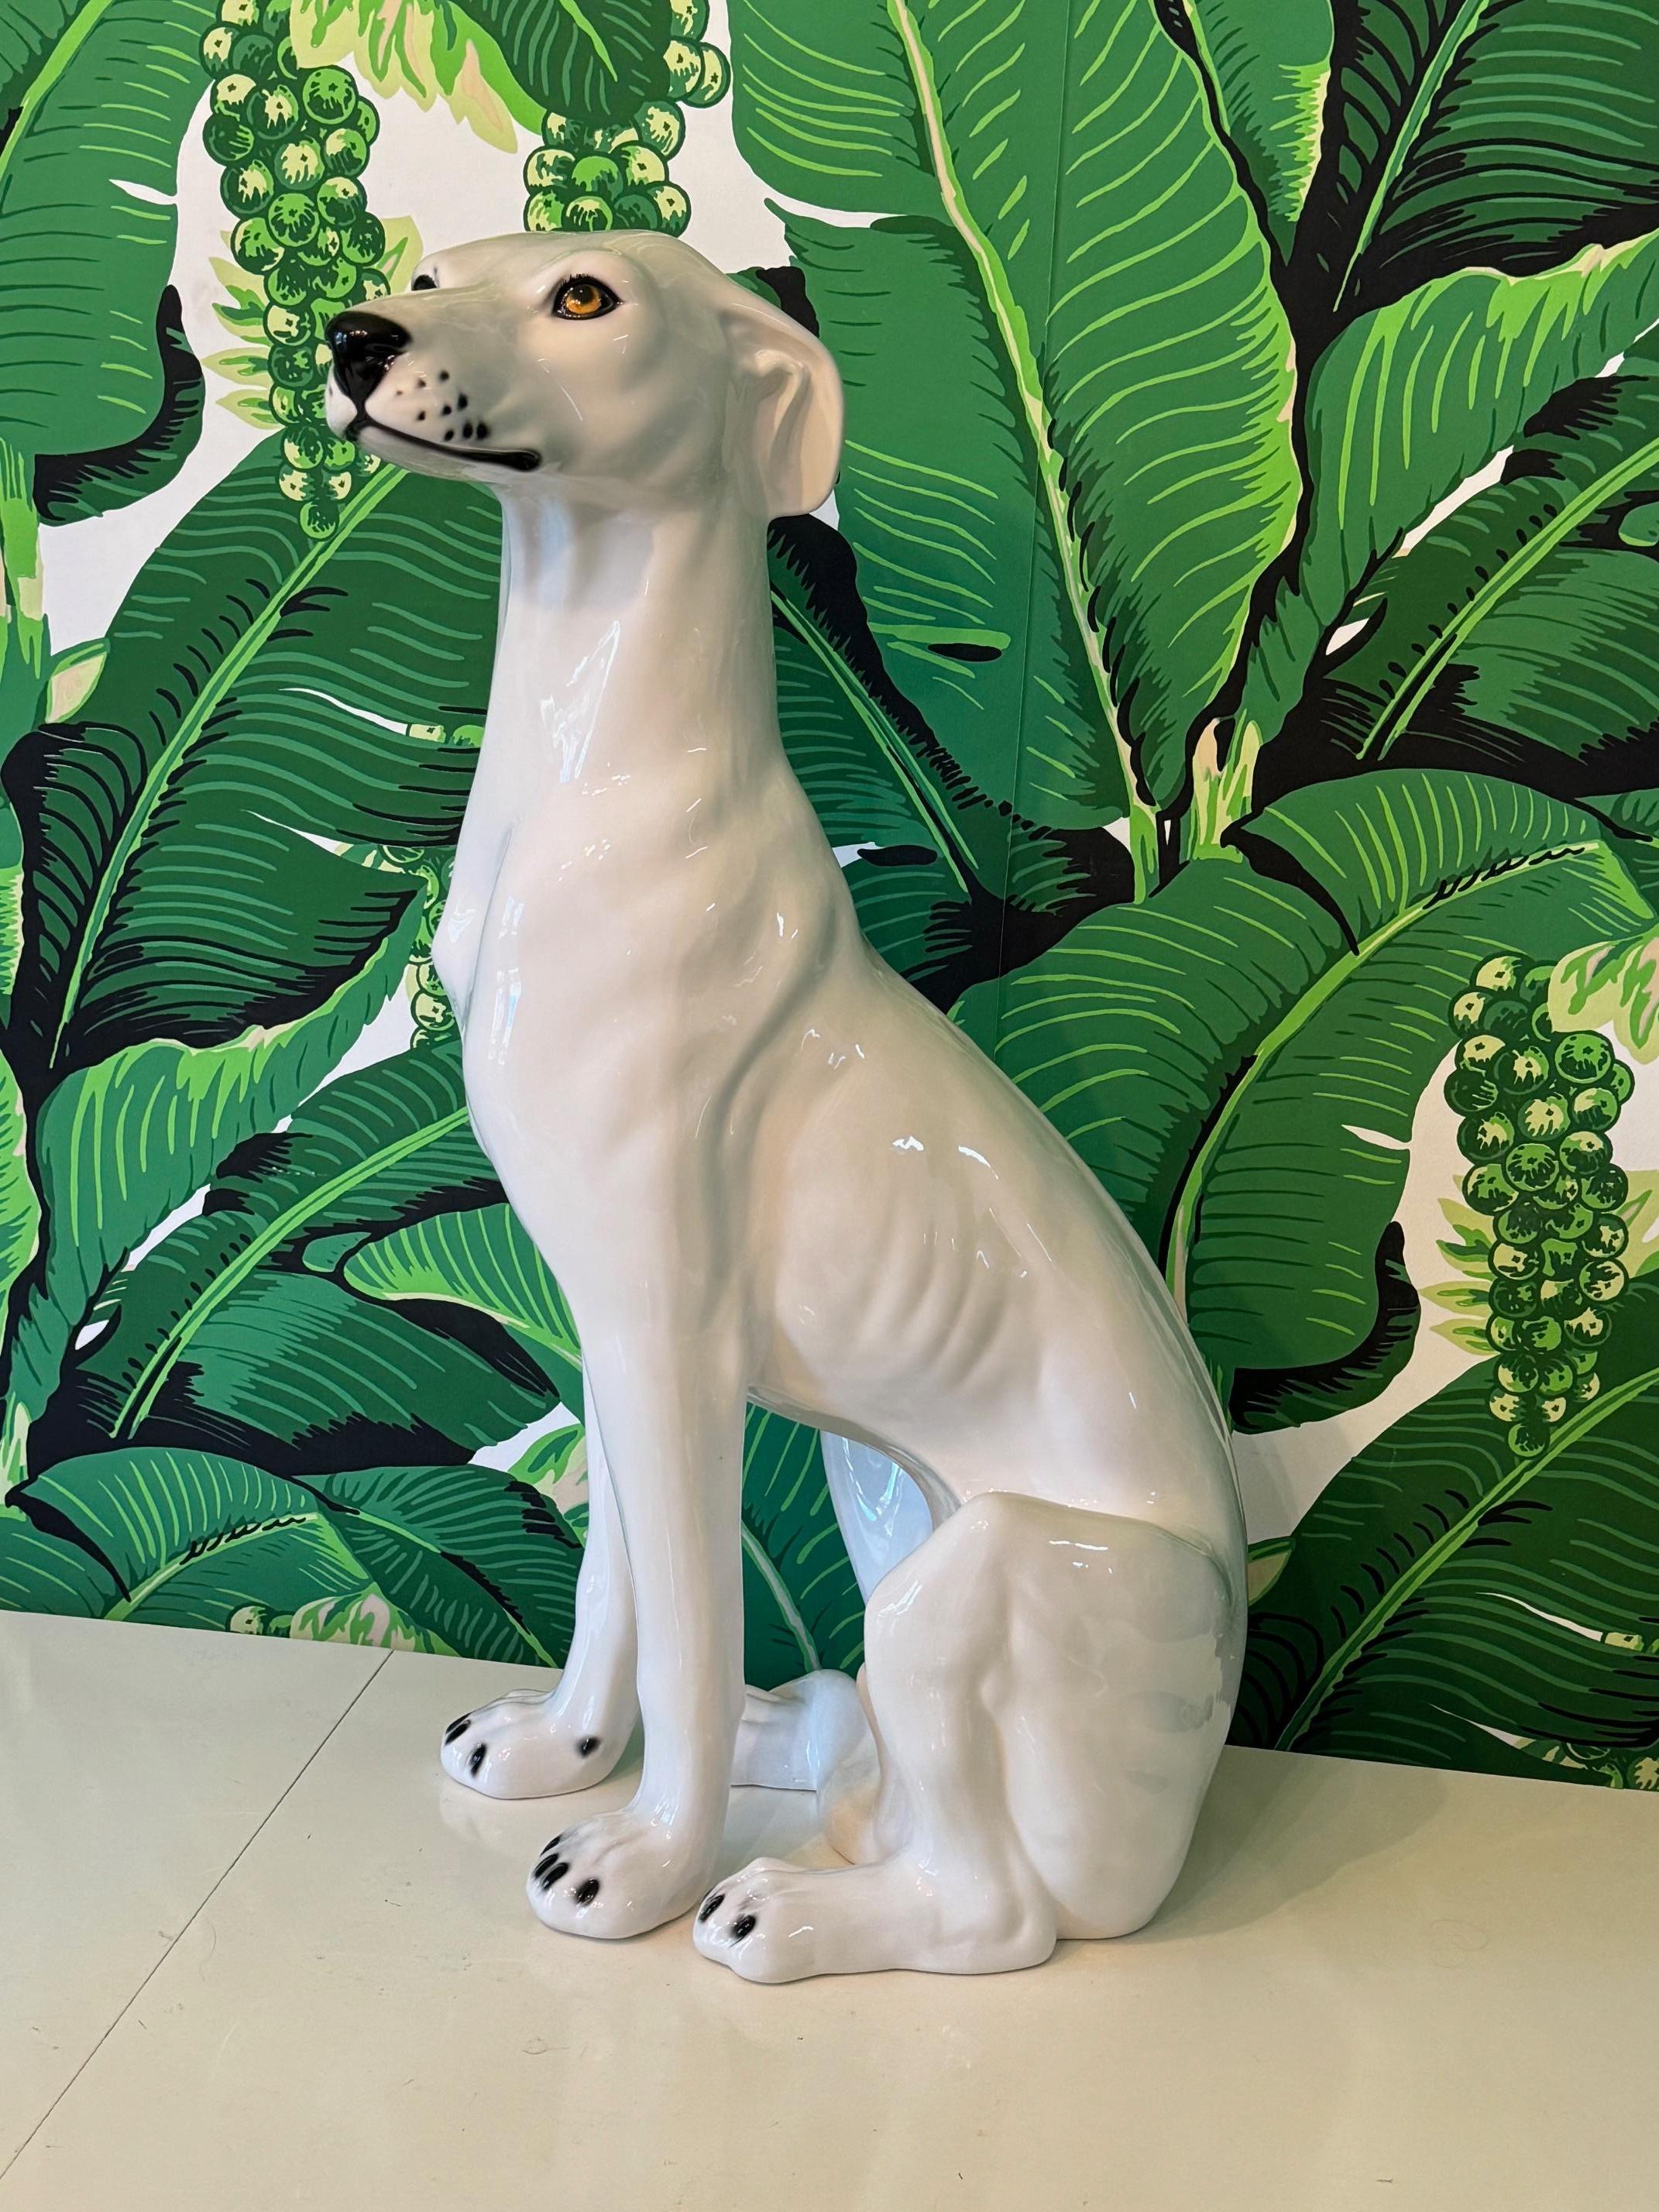 Grande statue de chien en céramique aux traits réalistes et à la finition brillante. Très bon état, sans fissures ni éclats.
Pour un devis d'expédition vers votre code postal exact, veuillez nous envoyer un message.
